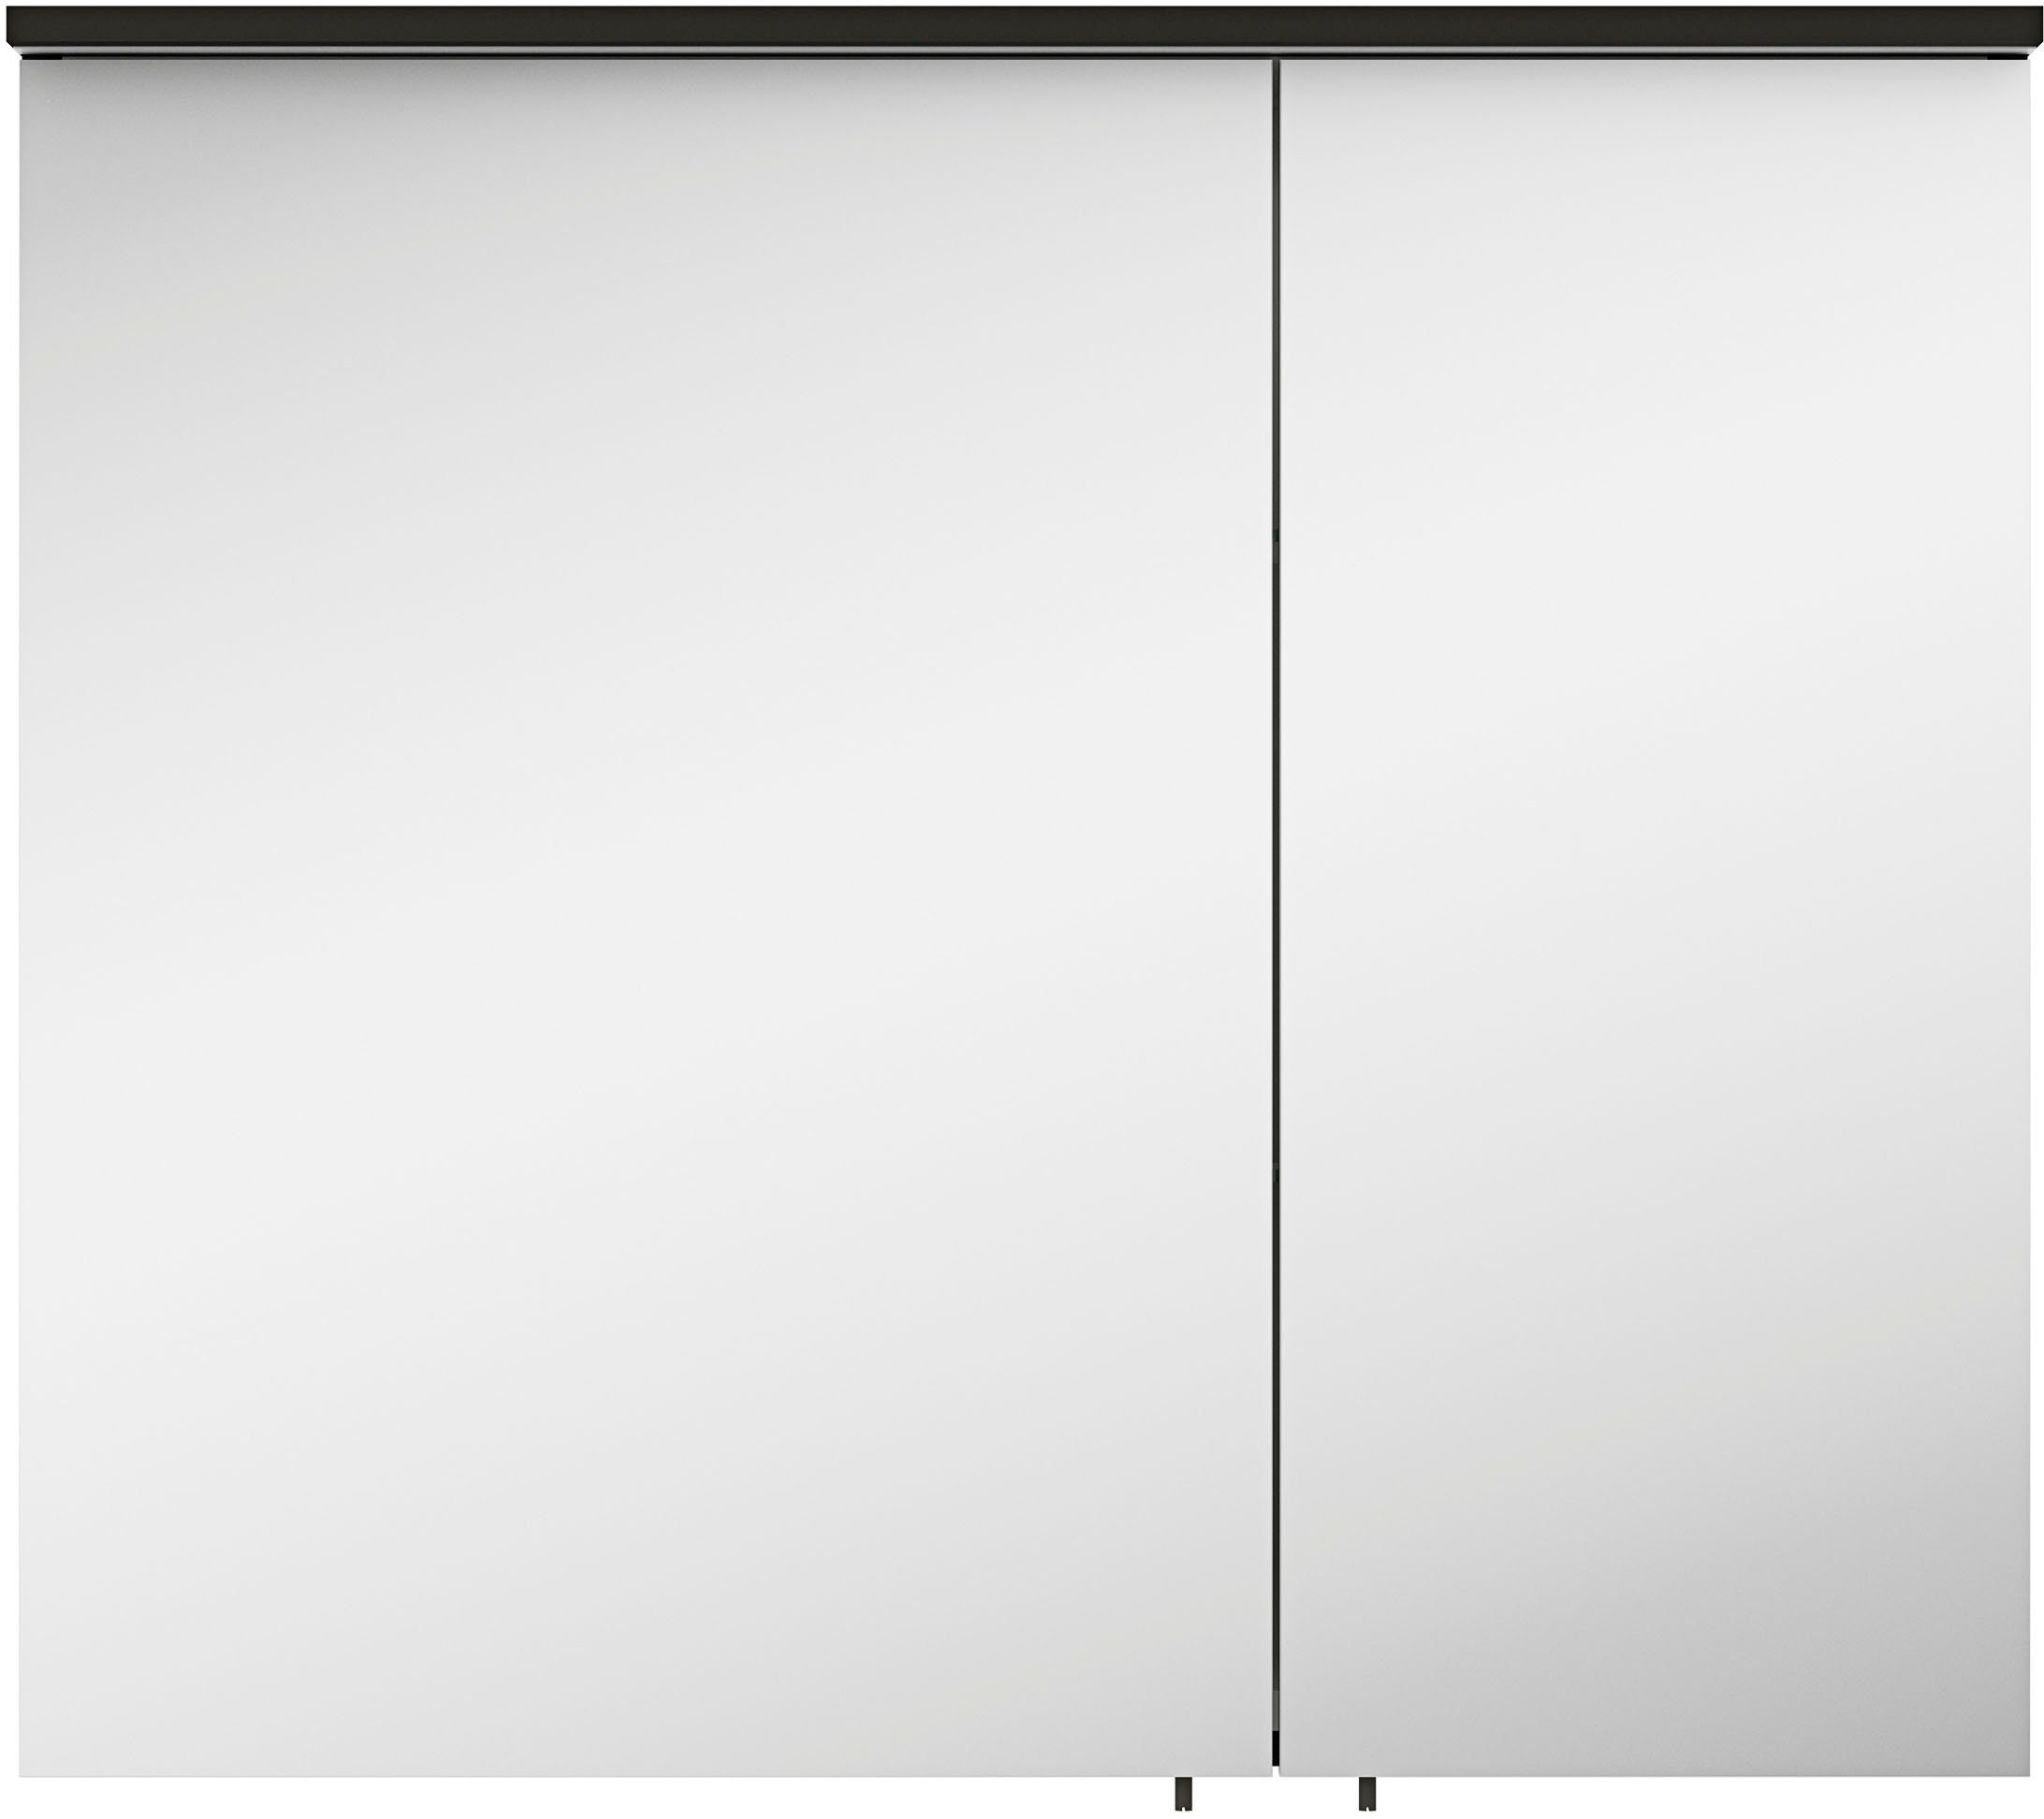 MARLIN Spiegelschrank 3510clarus 80 cm breit, Soft-Close-Funktion, inkl. Beleuchtung, vormontiert